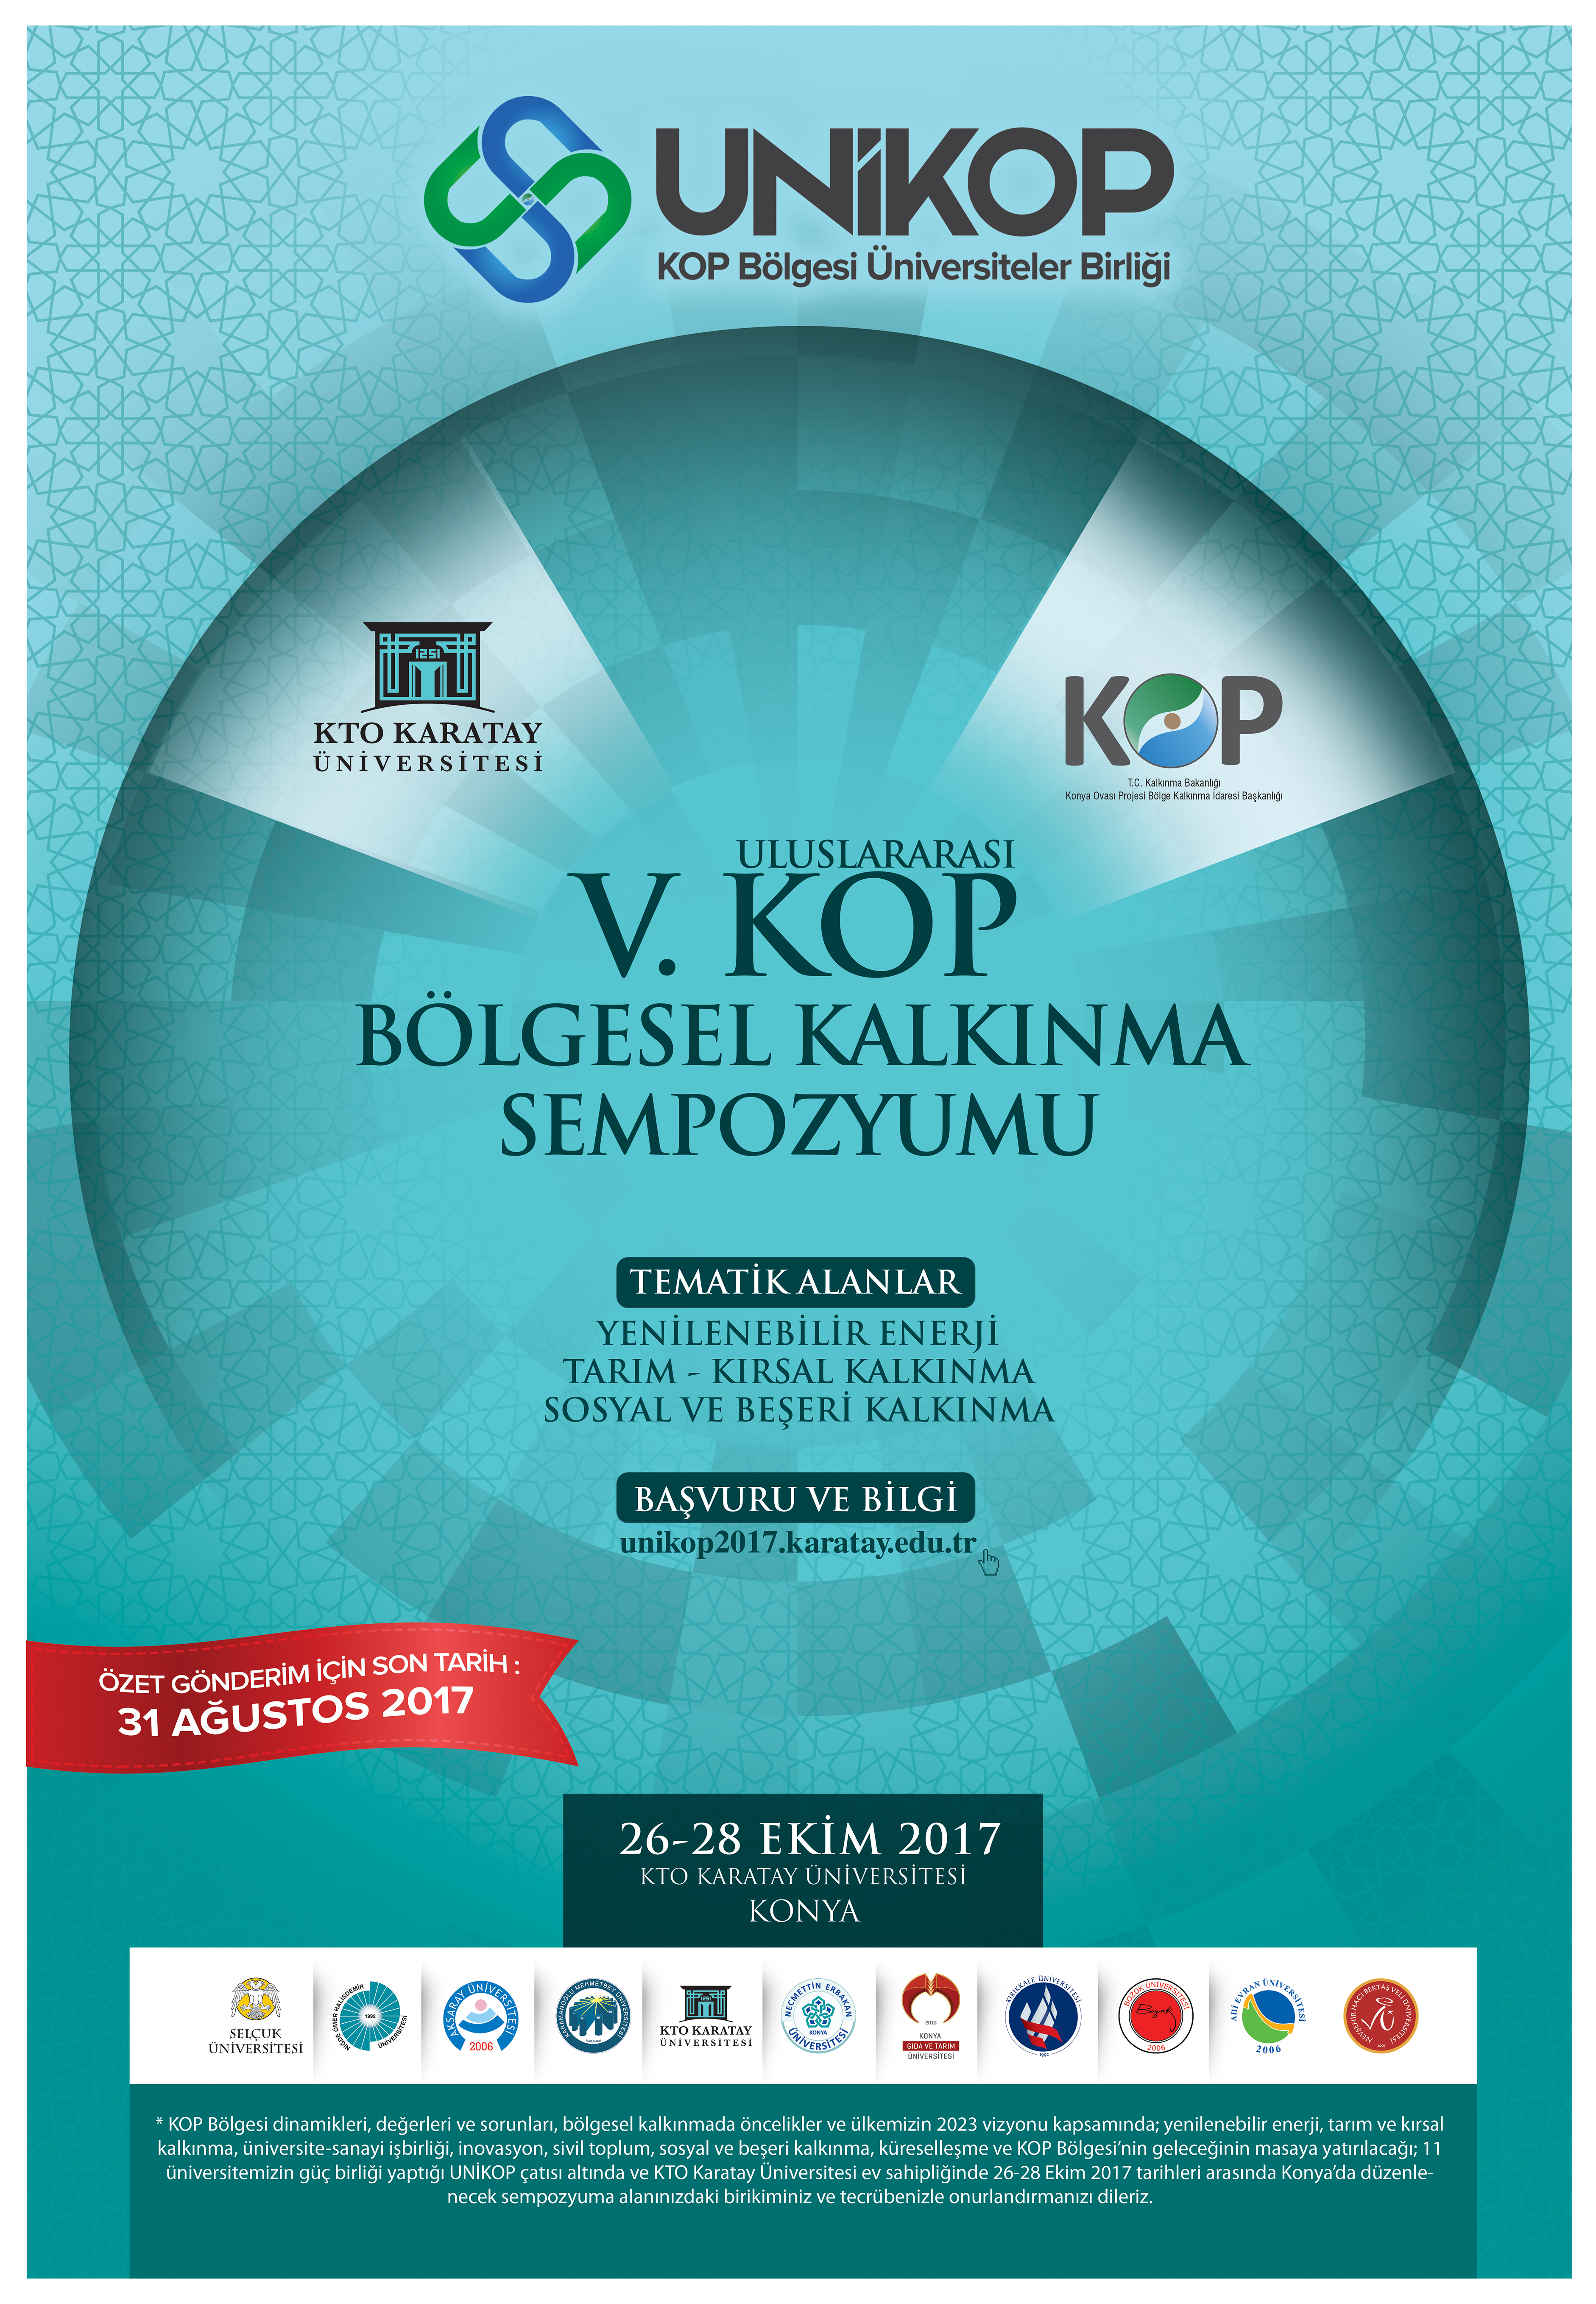 5. Uluslararası Kop Bölgesel Kalkınma Sempozyumu, Konya’da Düzenlenecek